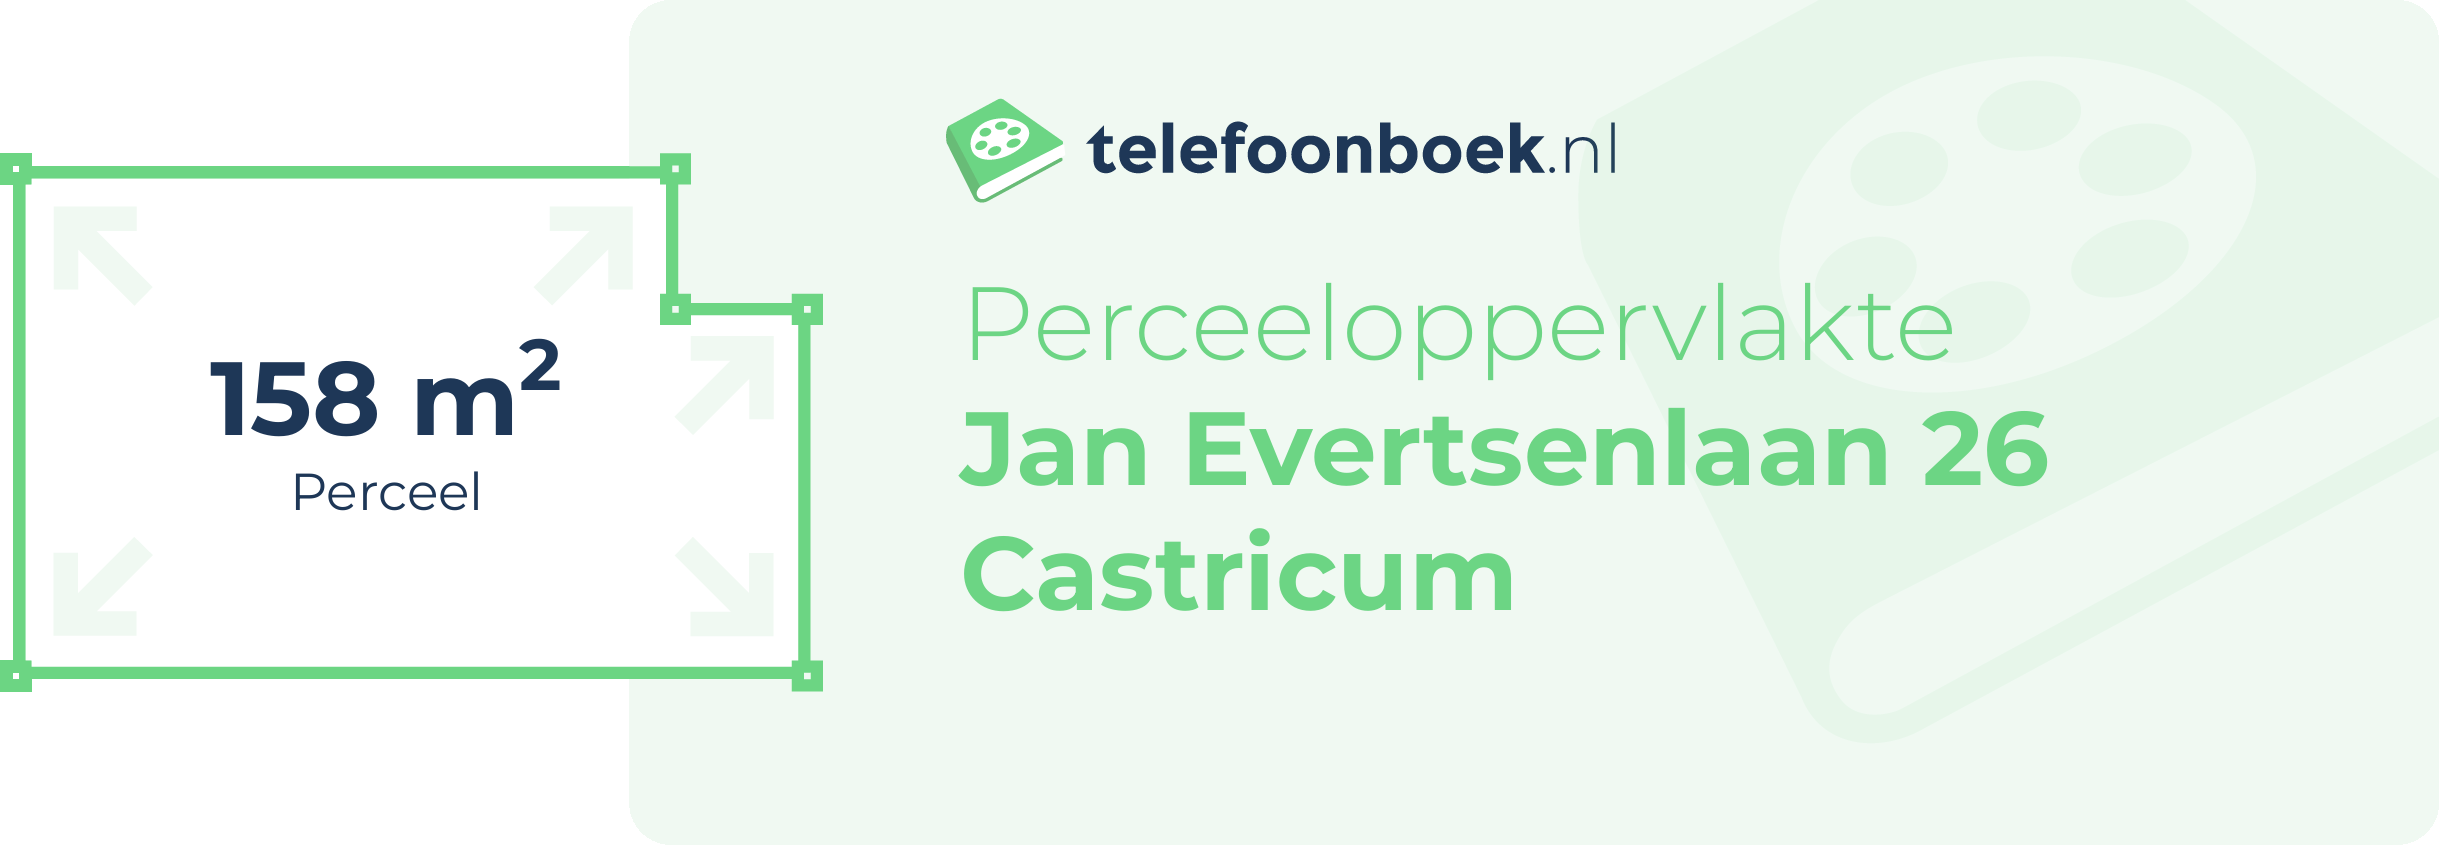 Perceeloppervlakte Jan Evertsenlaan 26 Castricum